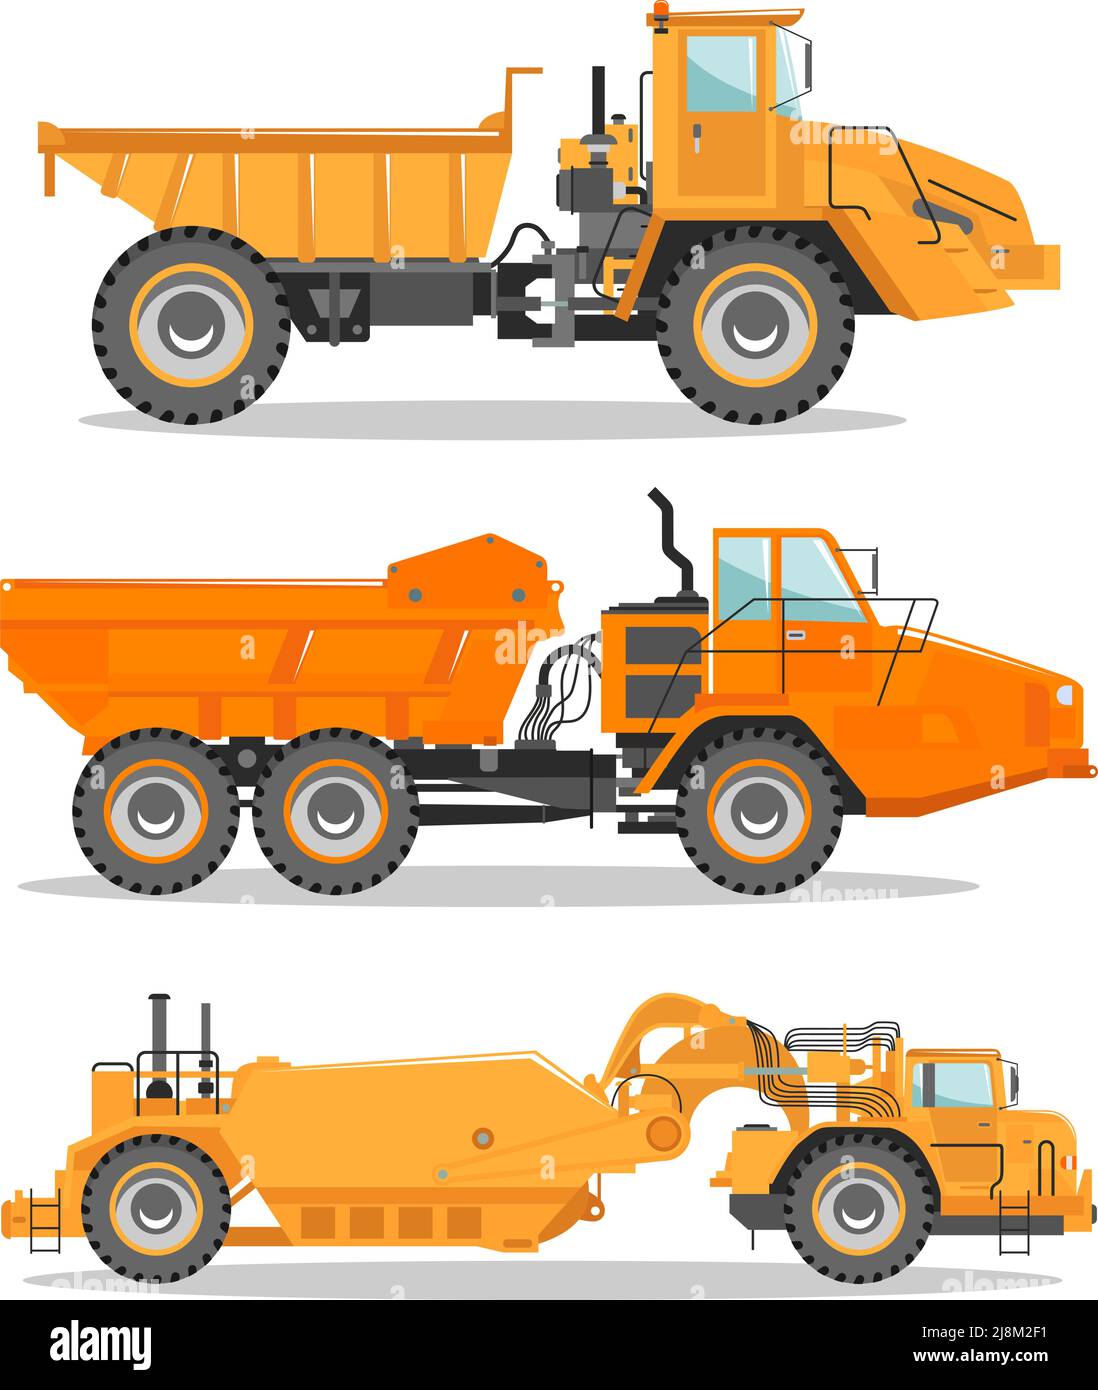 Illustrazione dettagliata del dumper da miniera. Carrello fuoristrada. Attrezzature per macchine da miniera pesanti e macchinari da costruzione. Illustrazione Vettoriale